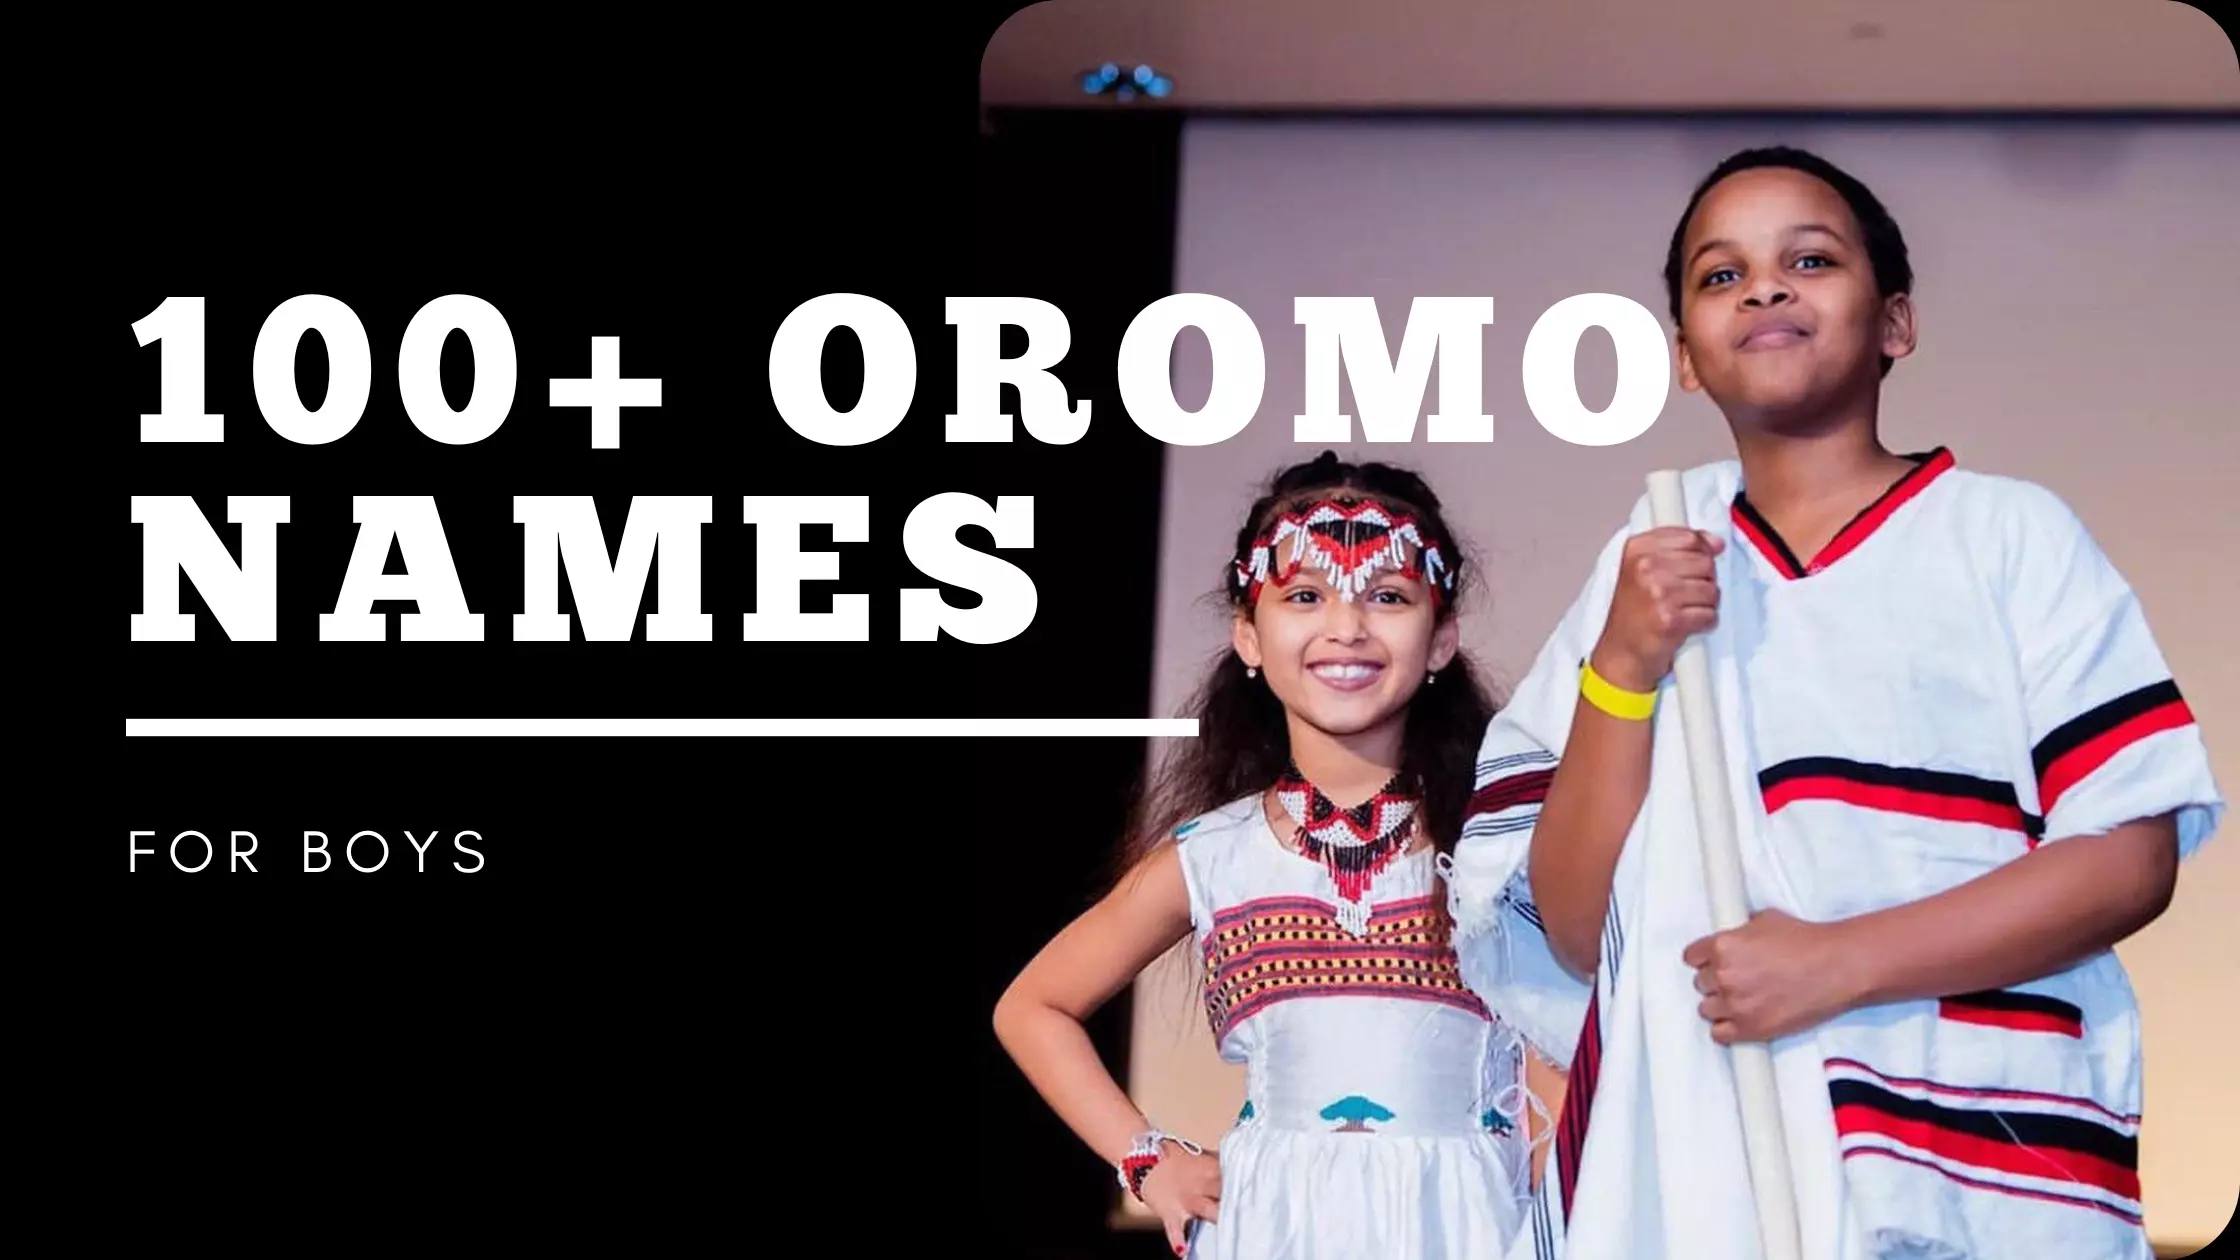 Oromo names for boys